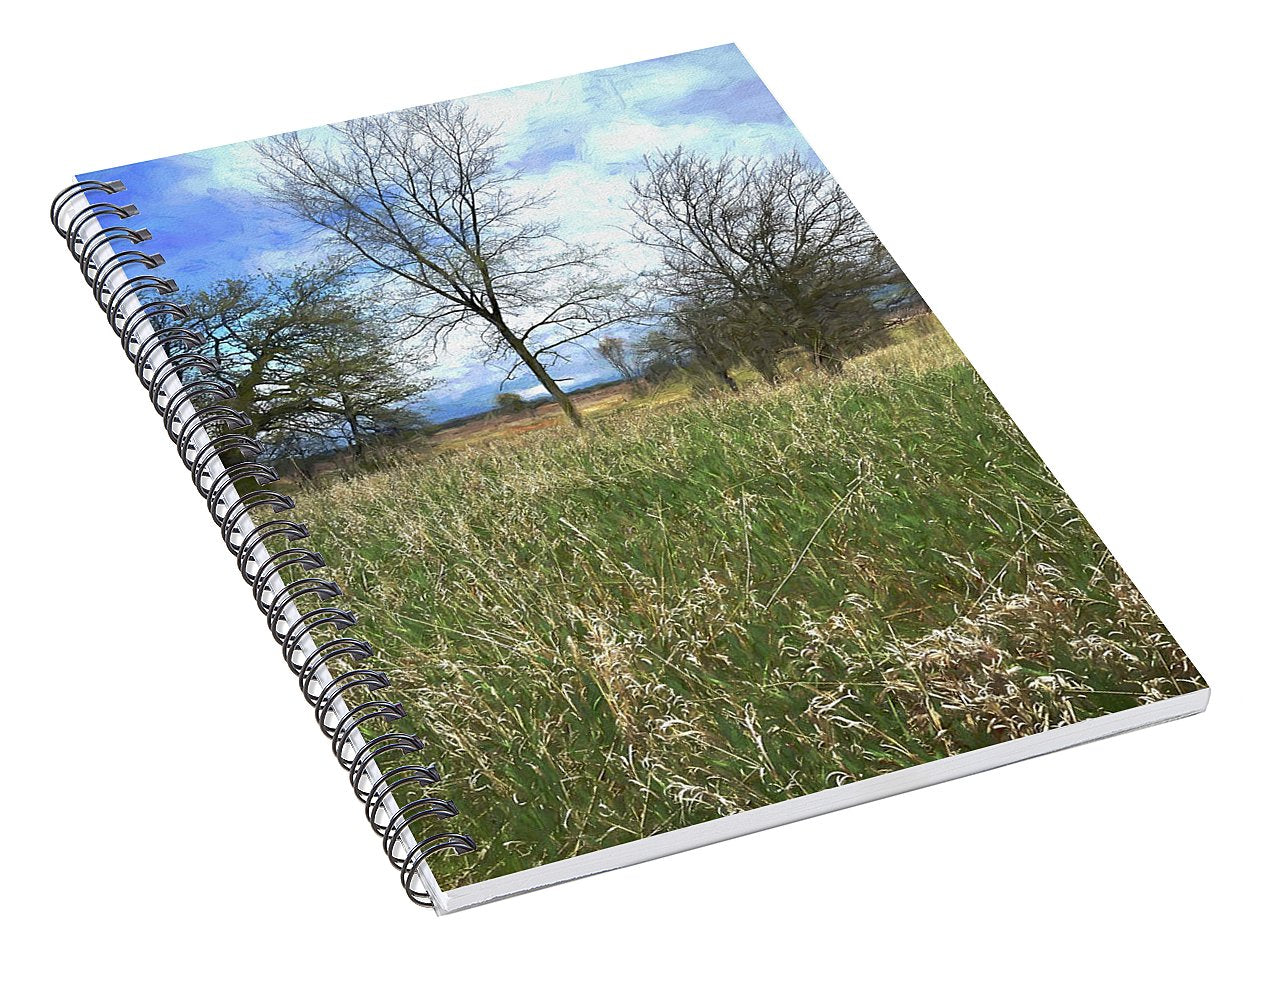 Spring Prairie Grass Landscape - Spiral Notebook